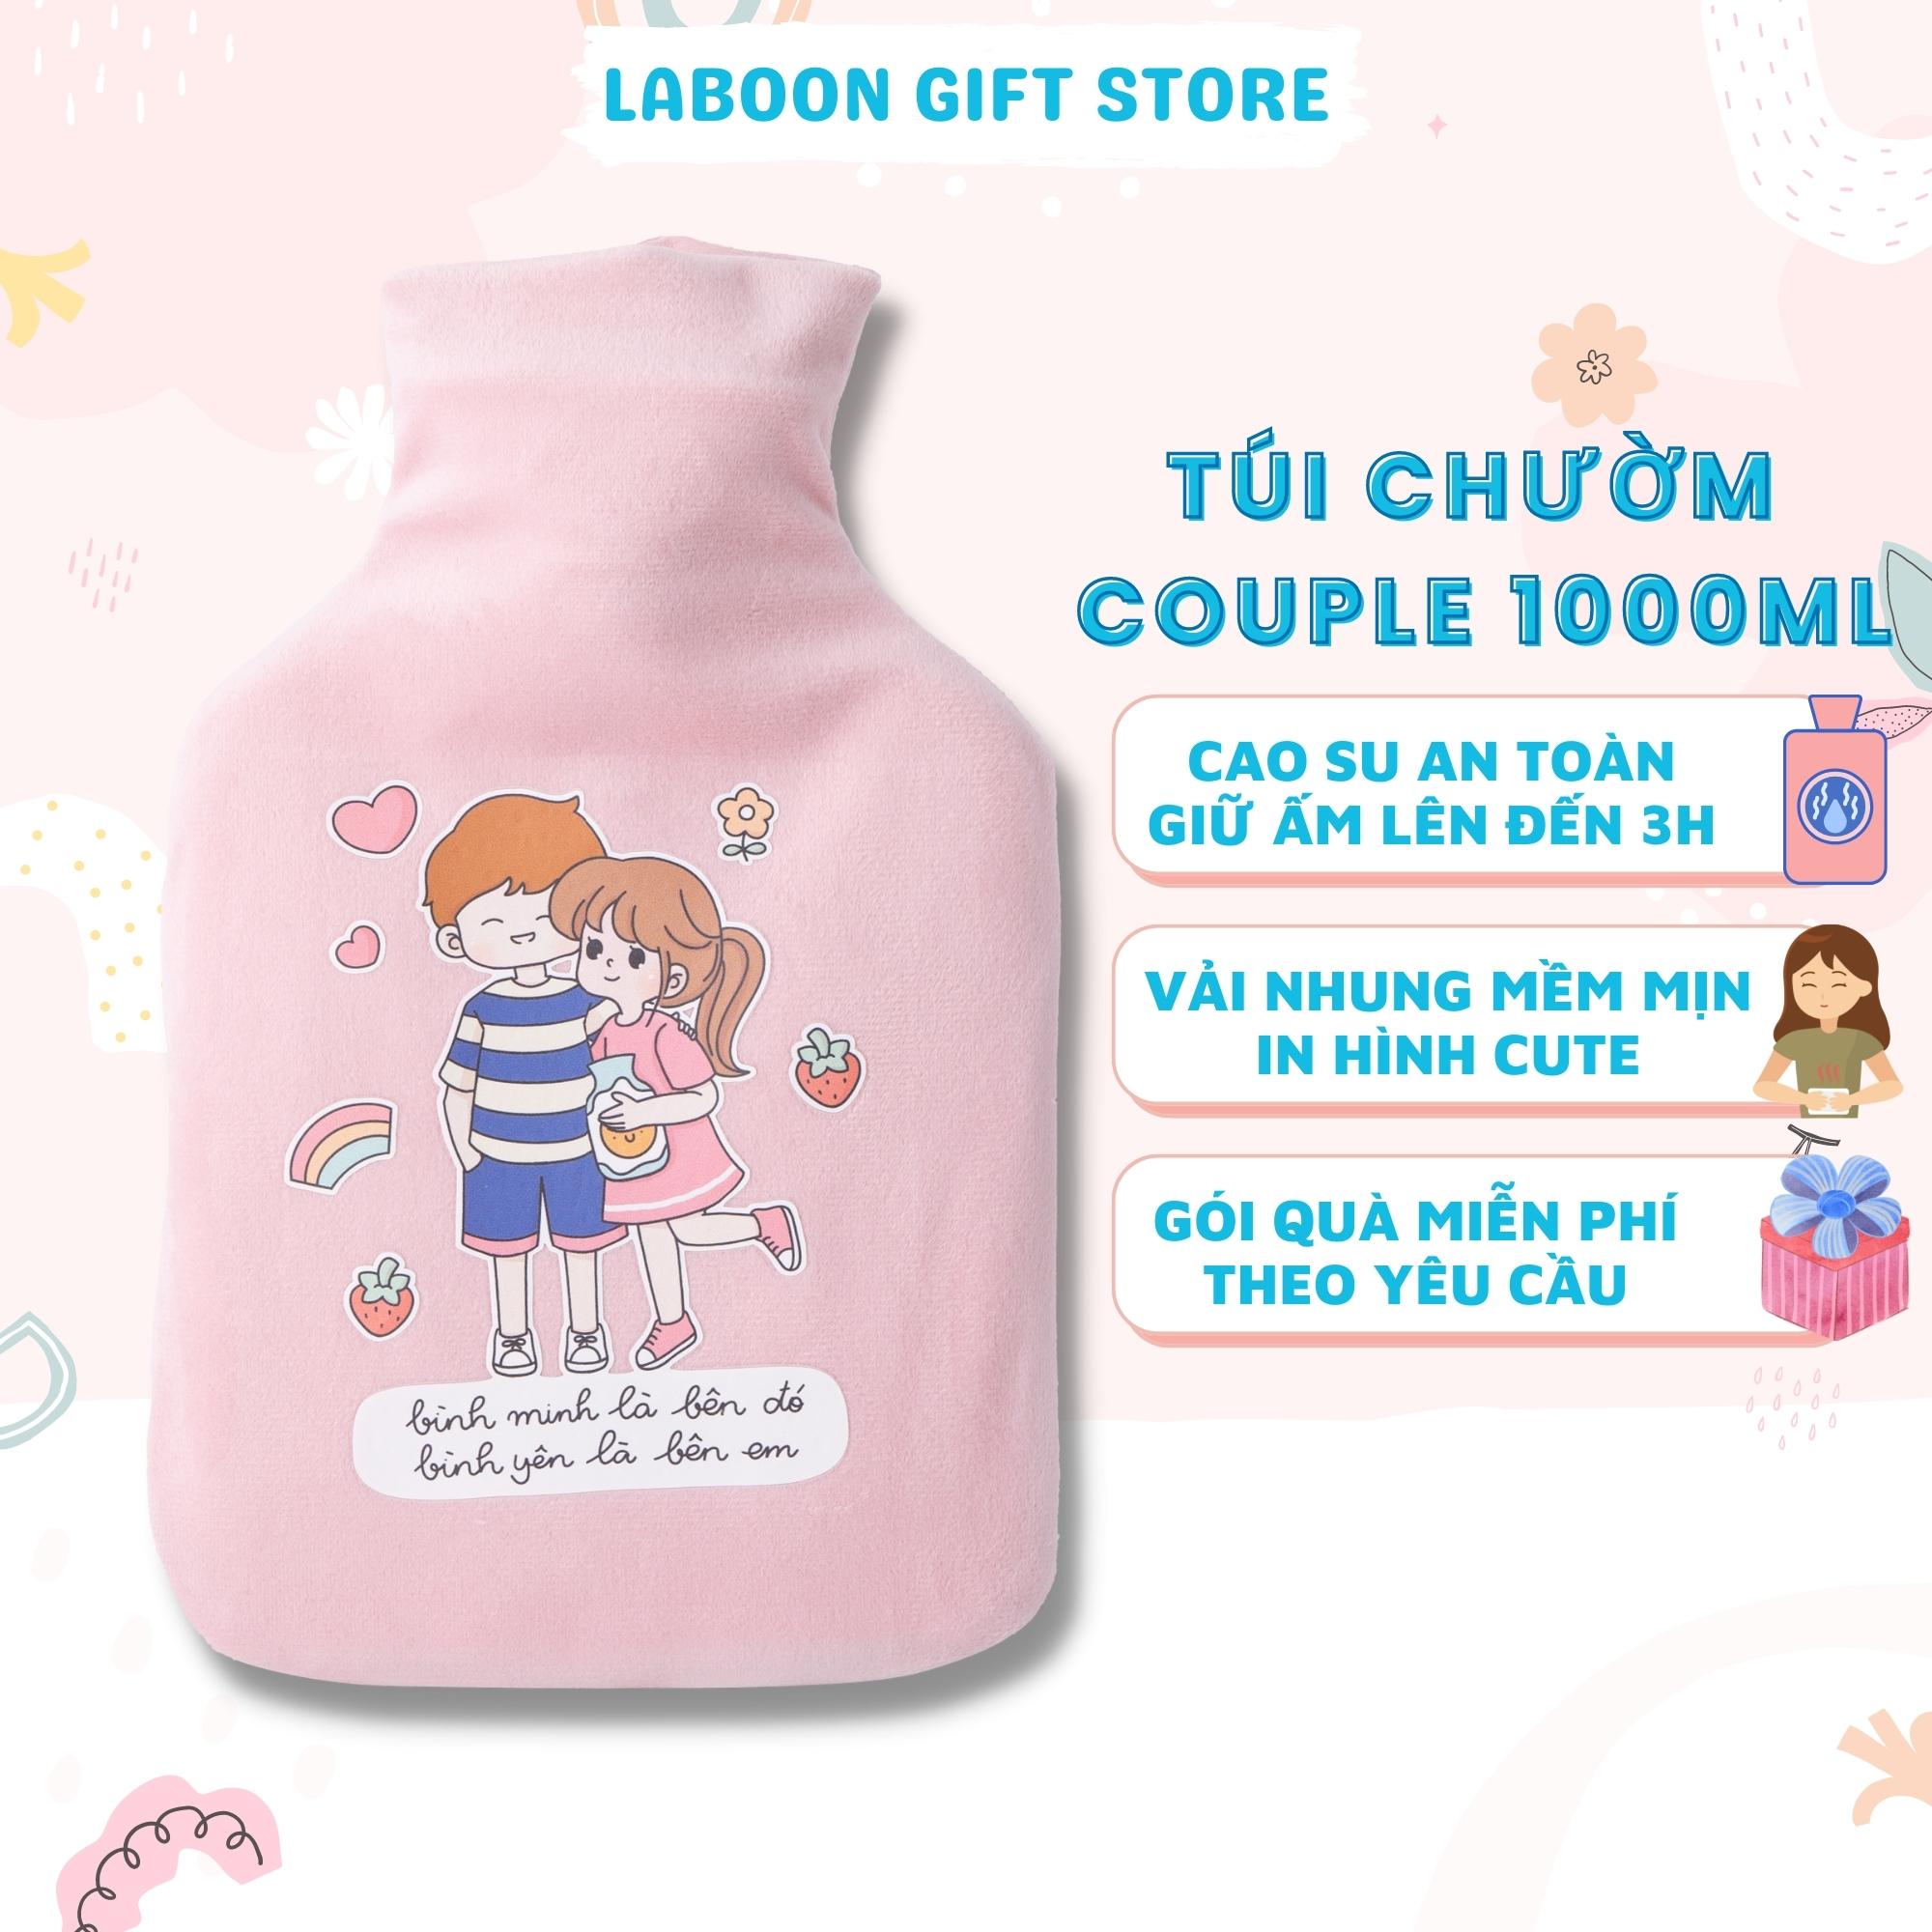 Túi chườm bụng kinh đa năng Laboon 1000ml phiên bản Couple in love, quà tặng ý nghĩa dễ thương cho bạn gái